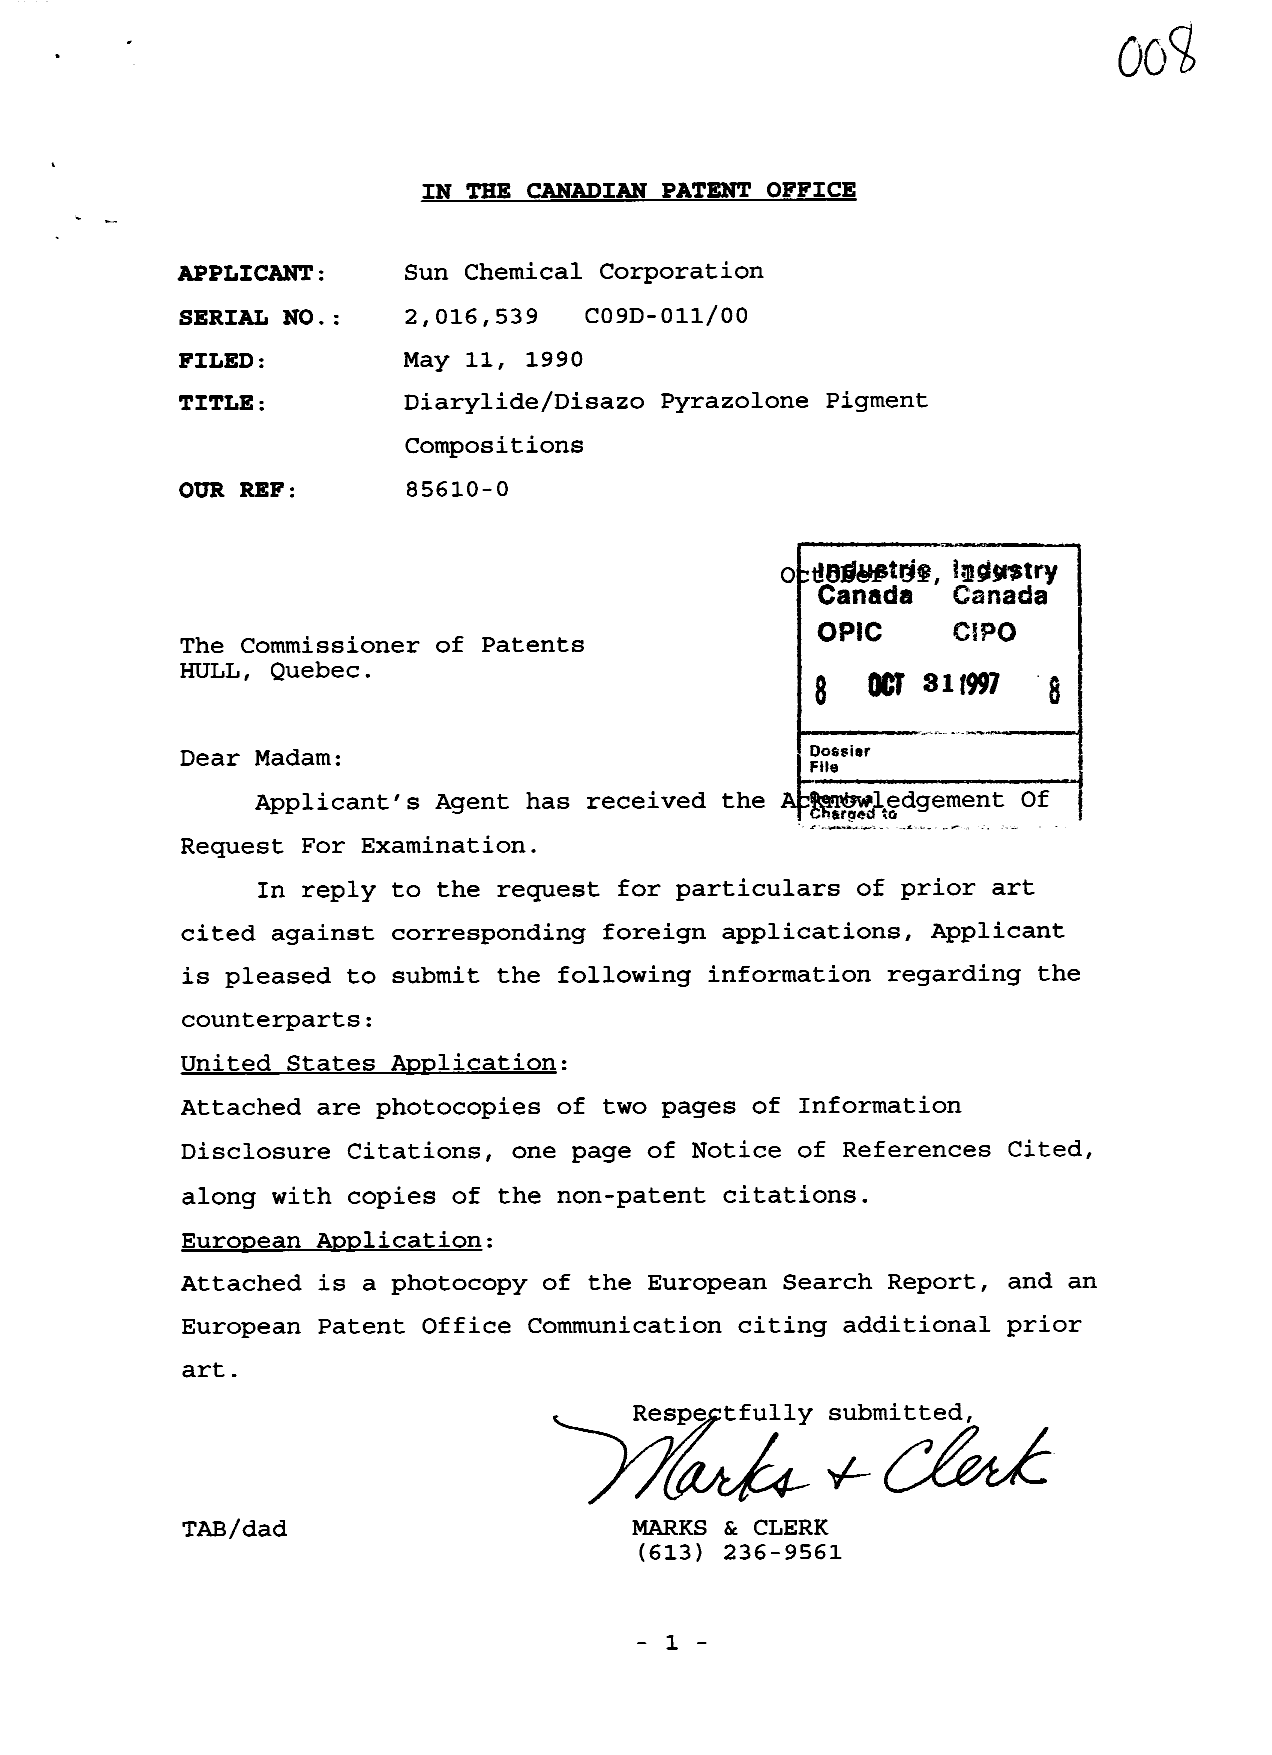 Document de brevet canadien 2016539. Poursuite-Amendment 19971031. Image 1 de 1